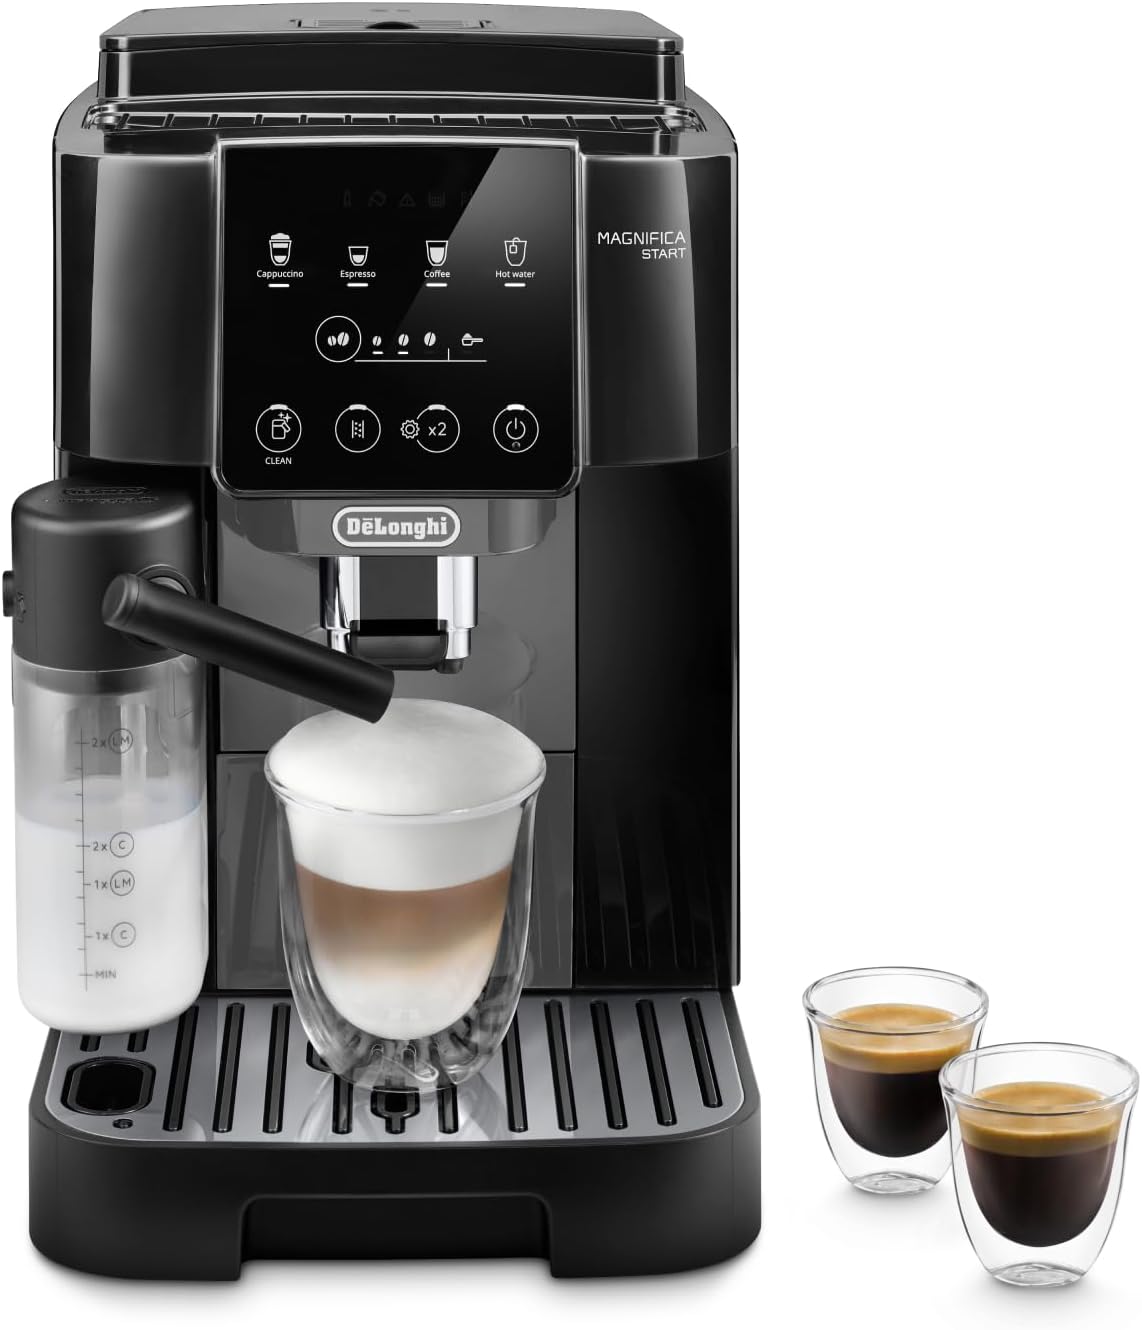 le migliori macchine per caffè con cappuccinatore, macchina da caffè, cappuccinatore, De Longhi Magnifica 